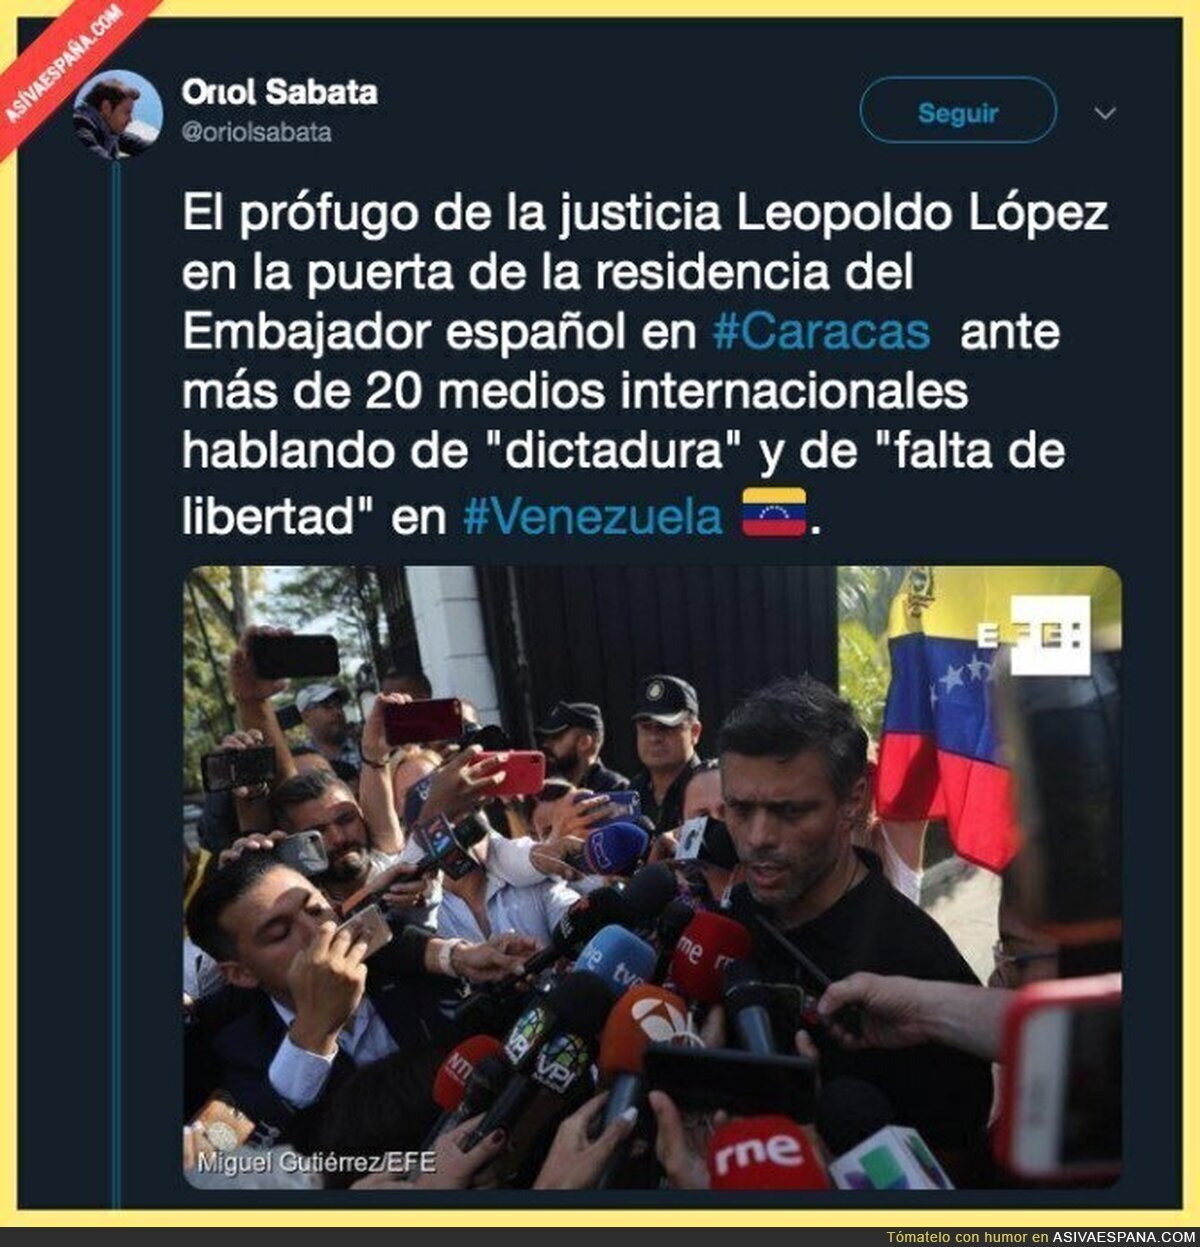 La falta de libertad que hay en Venezuela